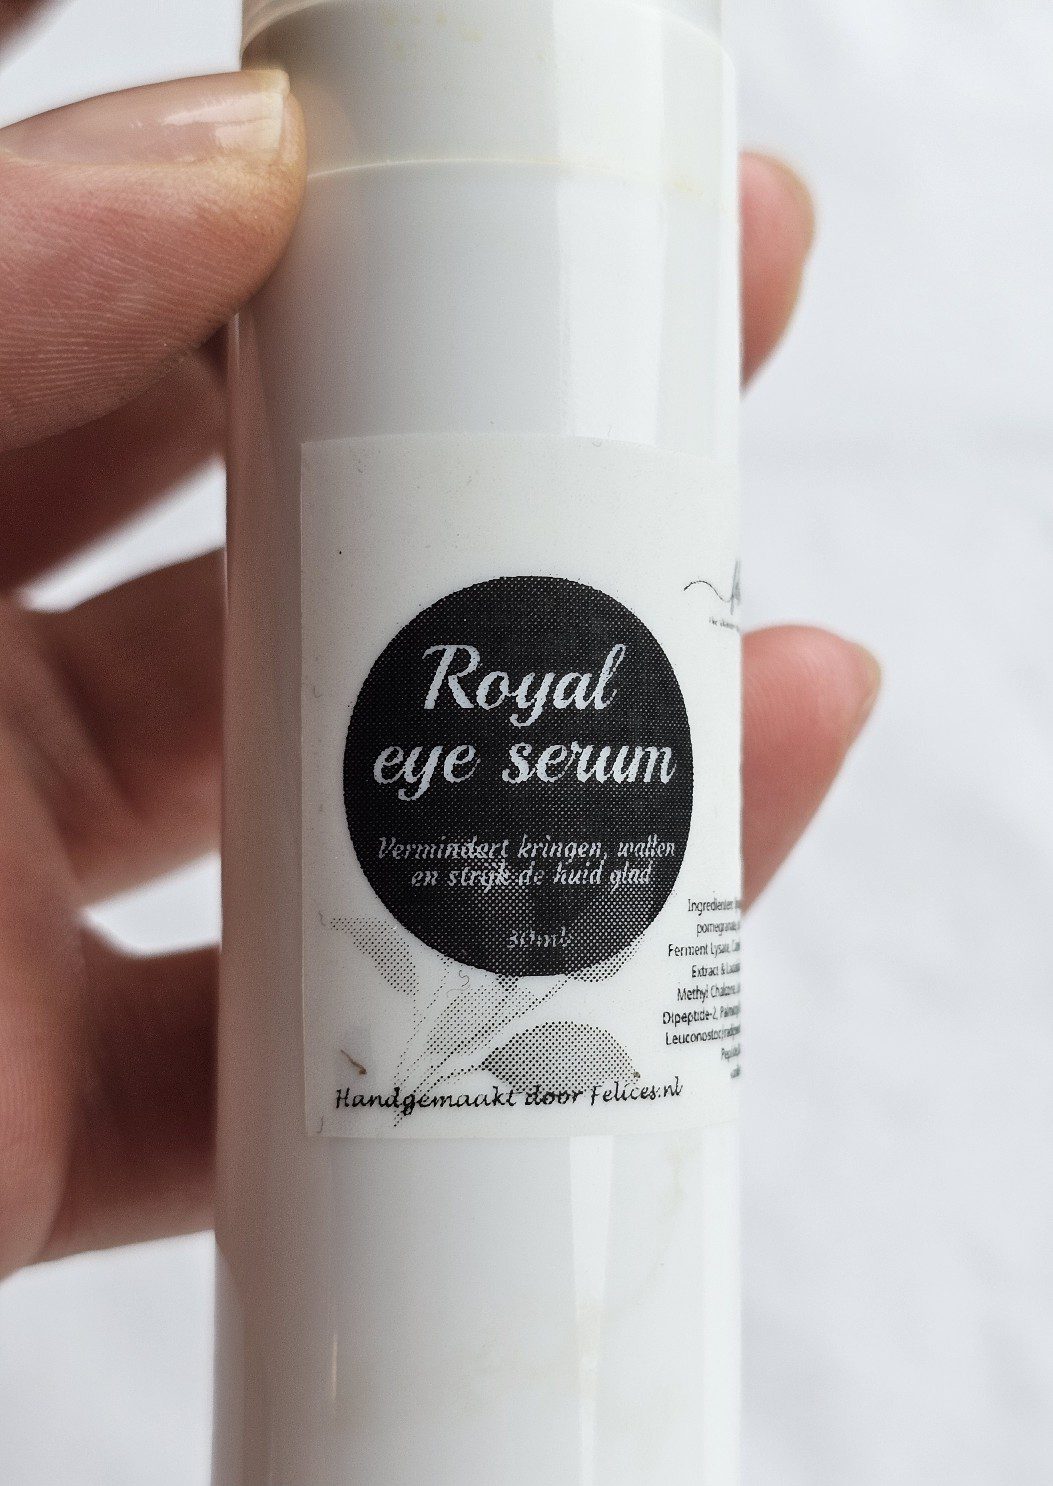 Royal eyes serum - biologische ogen serum tegen kringen, wallen en rimpels 30ml